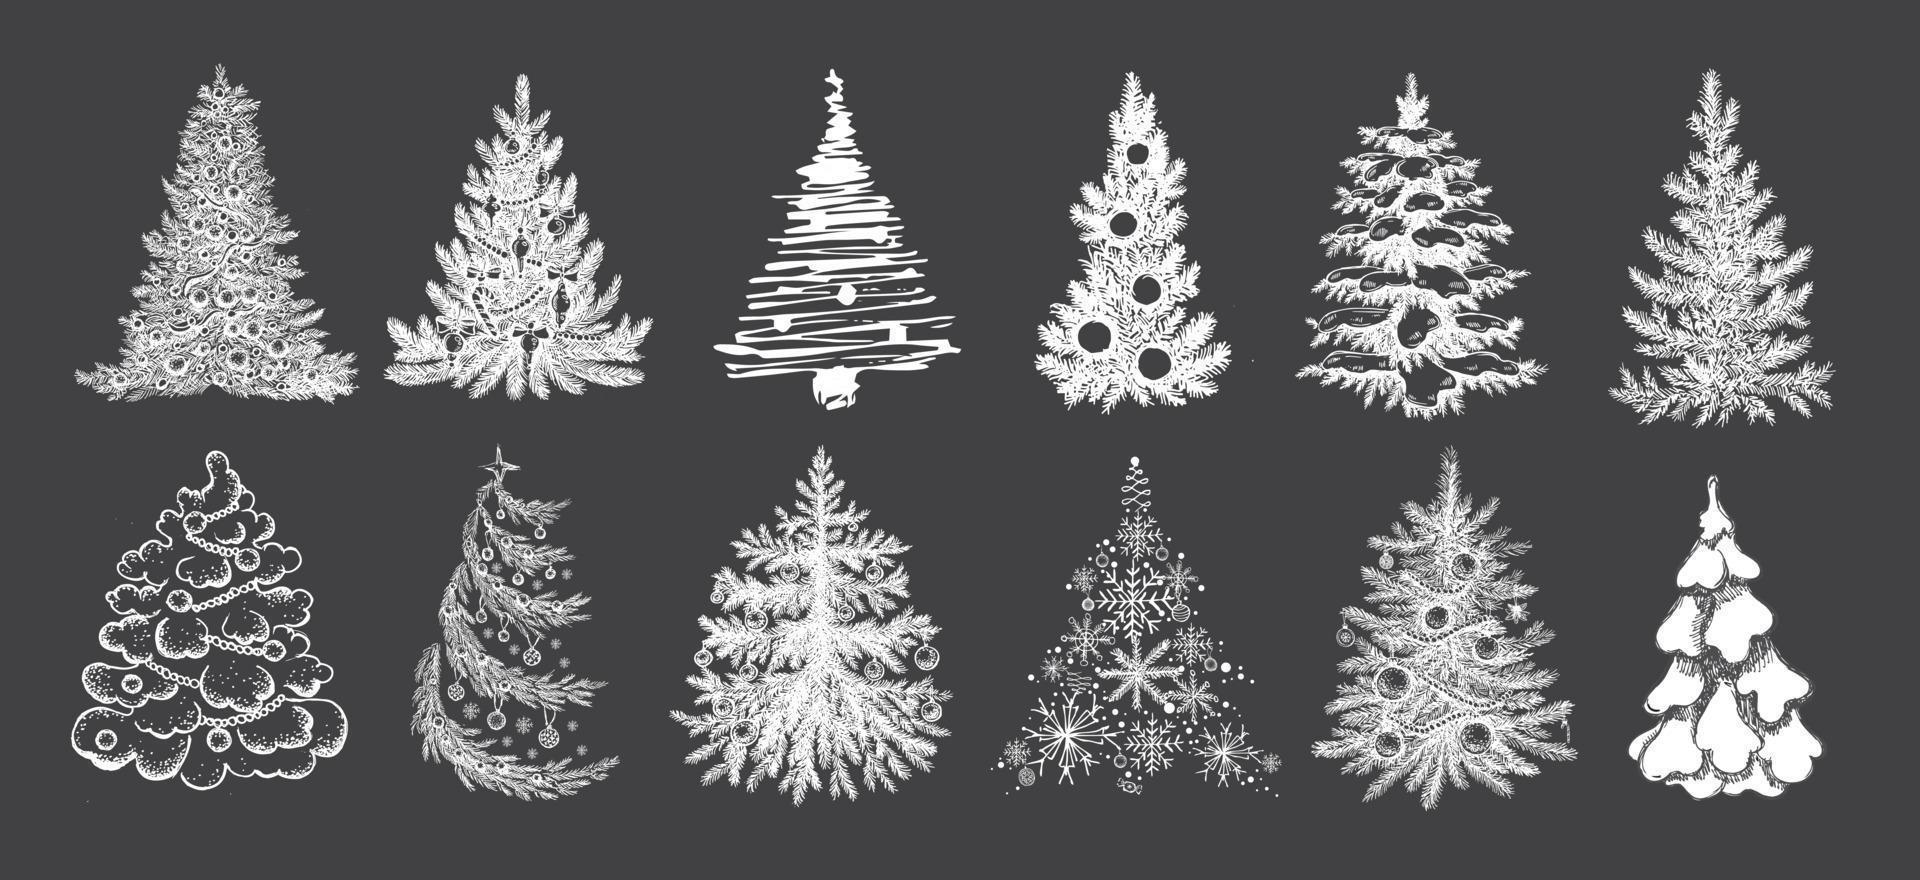 381.epsjuego de árboles de navidad. ilustración dibujada a mano. vector. vector